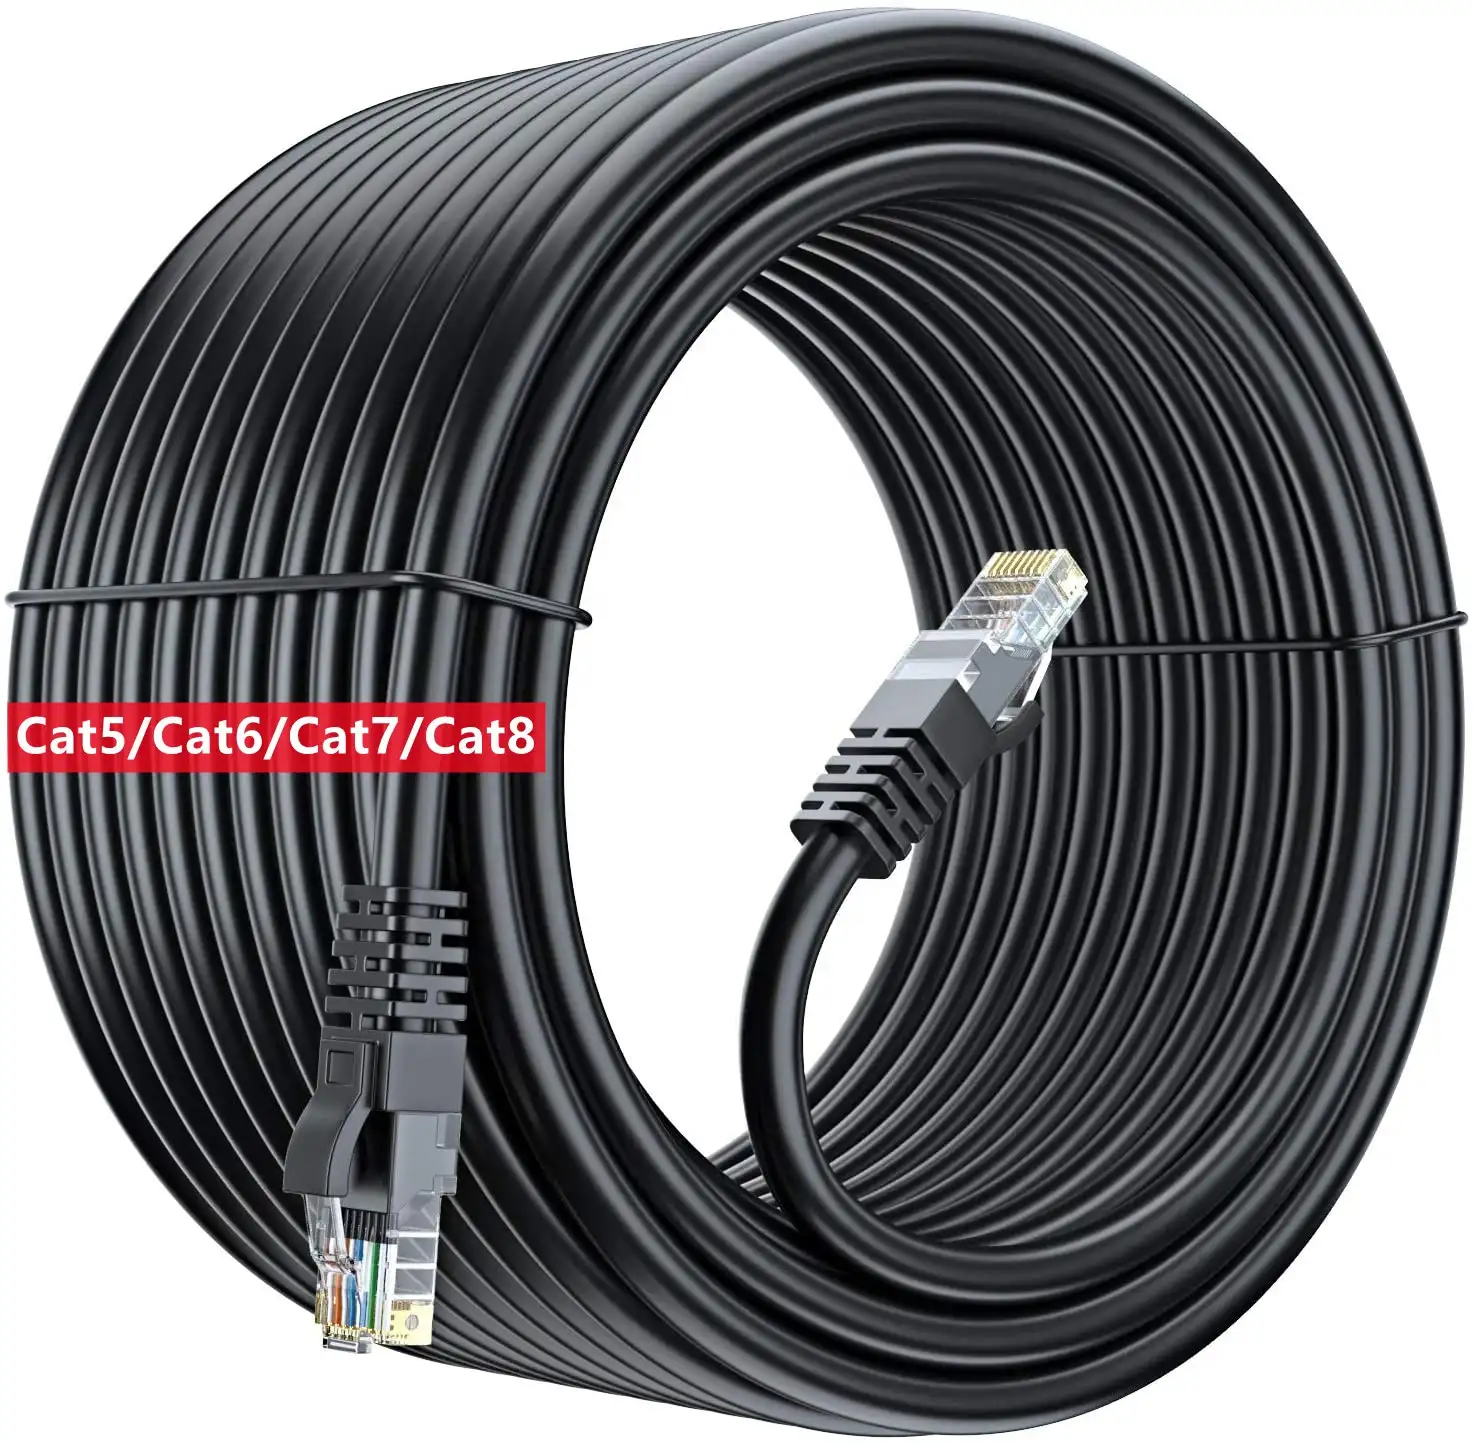 Паровые соединительные кабели SFTP на заказ, соединительные кабели RJ45, Cat 8, Cat 7, CAT 6, CAT5, CAT8, Cat 7, Ethernet сетевой Lan кабель 1 м, 2 м, 3 м, 5 м, 10 м, 20 м